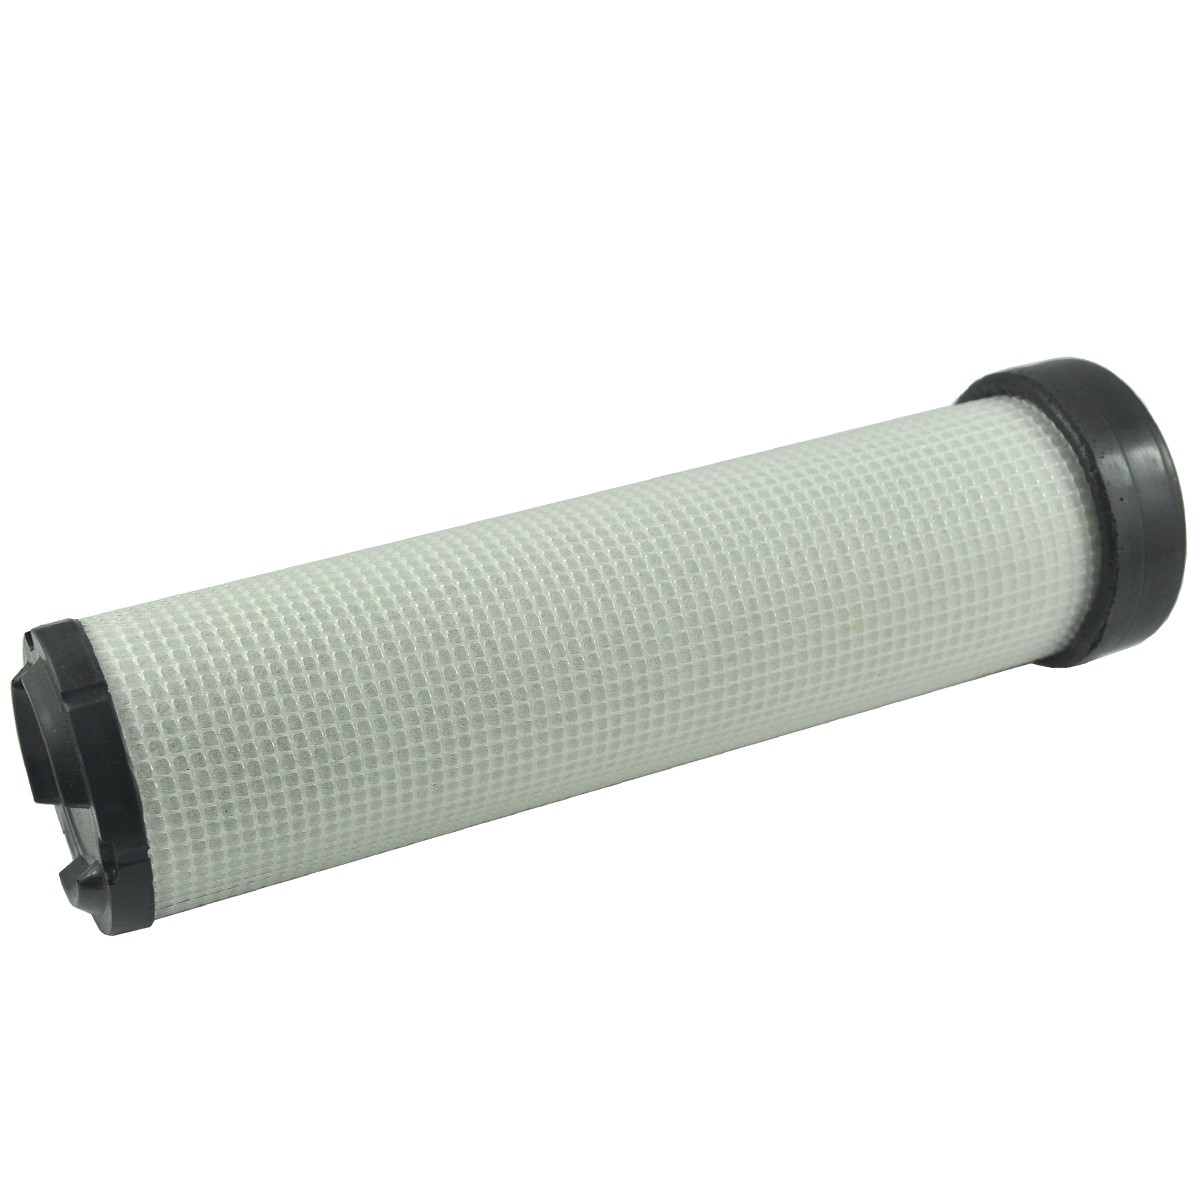 Air filter 83 x 300 mm / Kubota M4700/M5000/M5400/M5700 / LS MT3.50/U5020 / 6-01-102-02